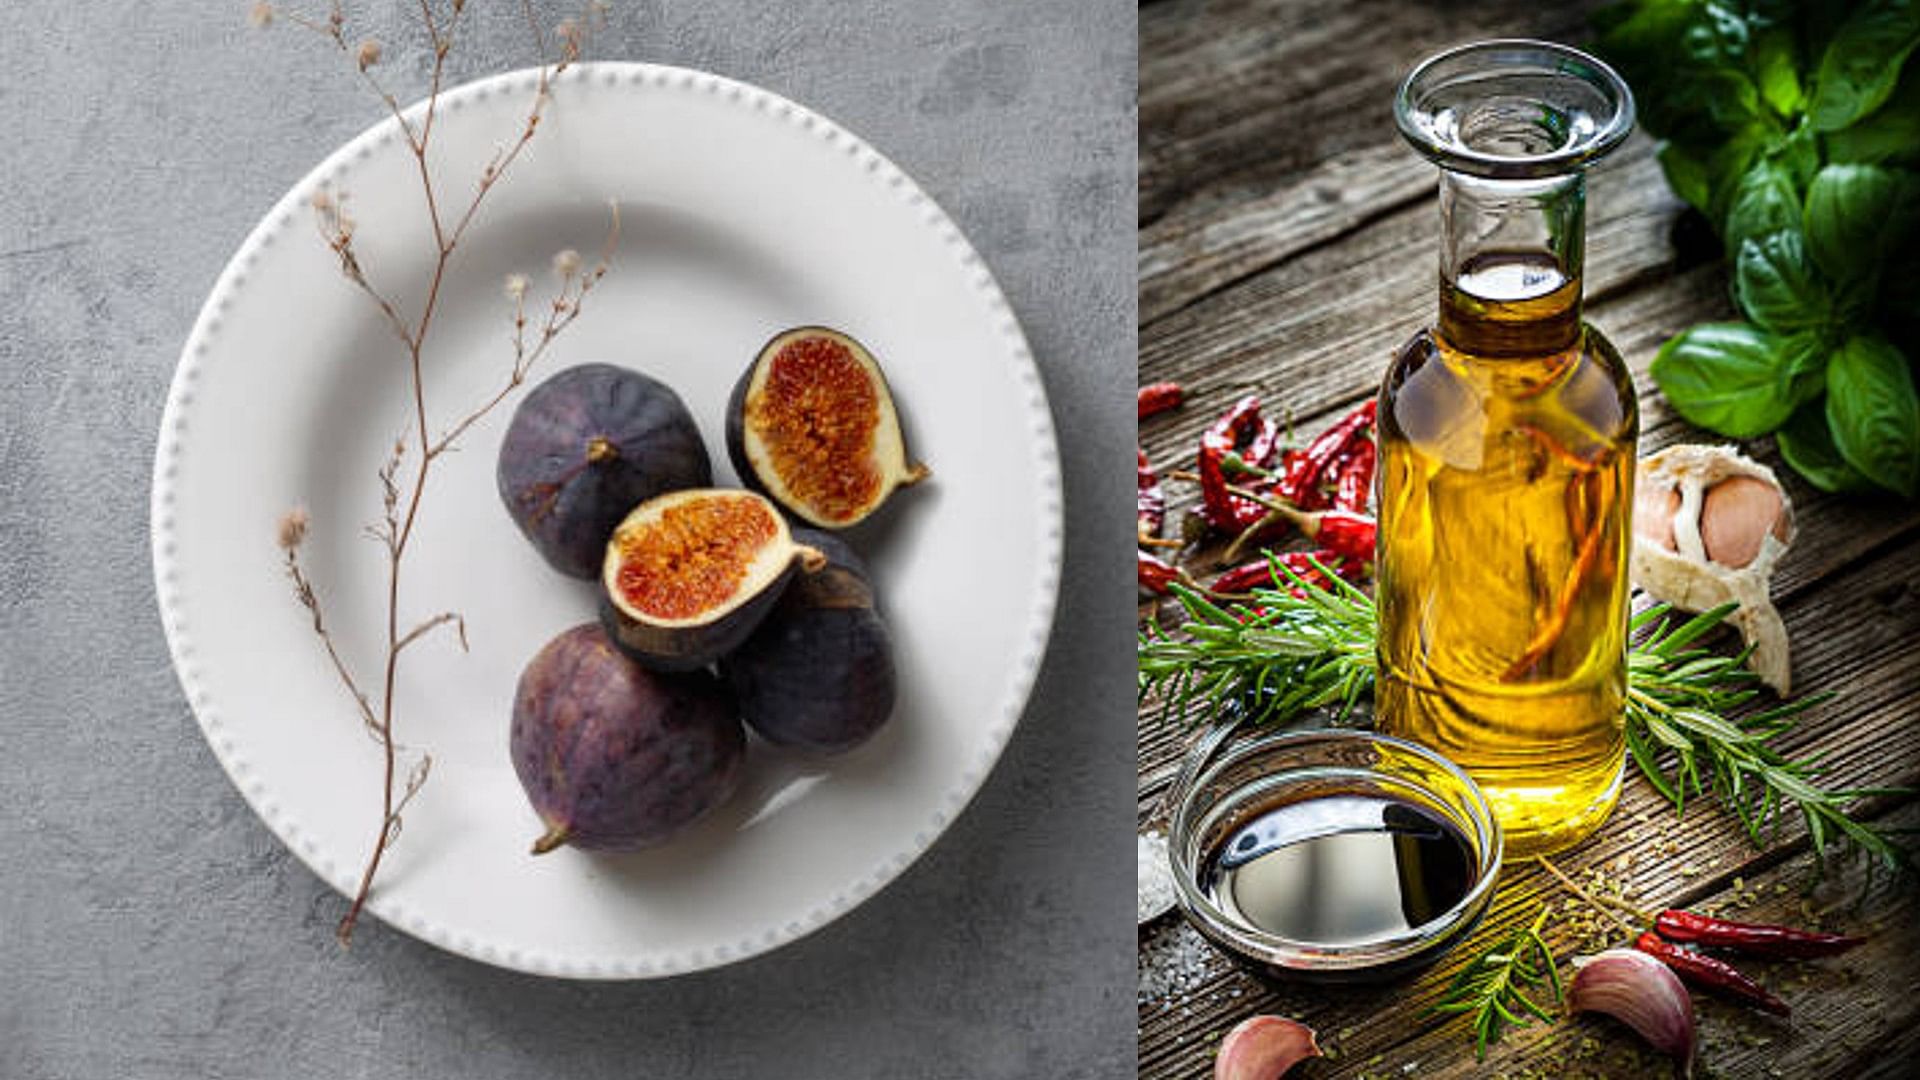 Figs Soaked In Apple Cider Vinegar Benefits seb ke sirke me bheege anjeer khane ke fayde